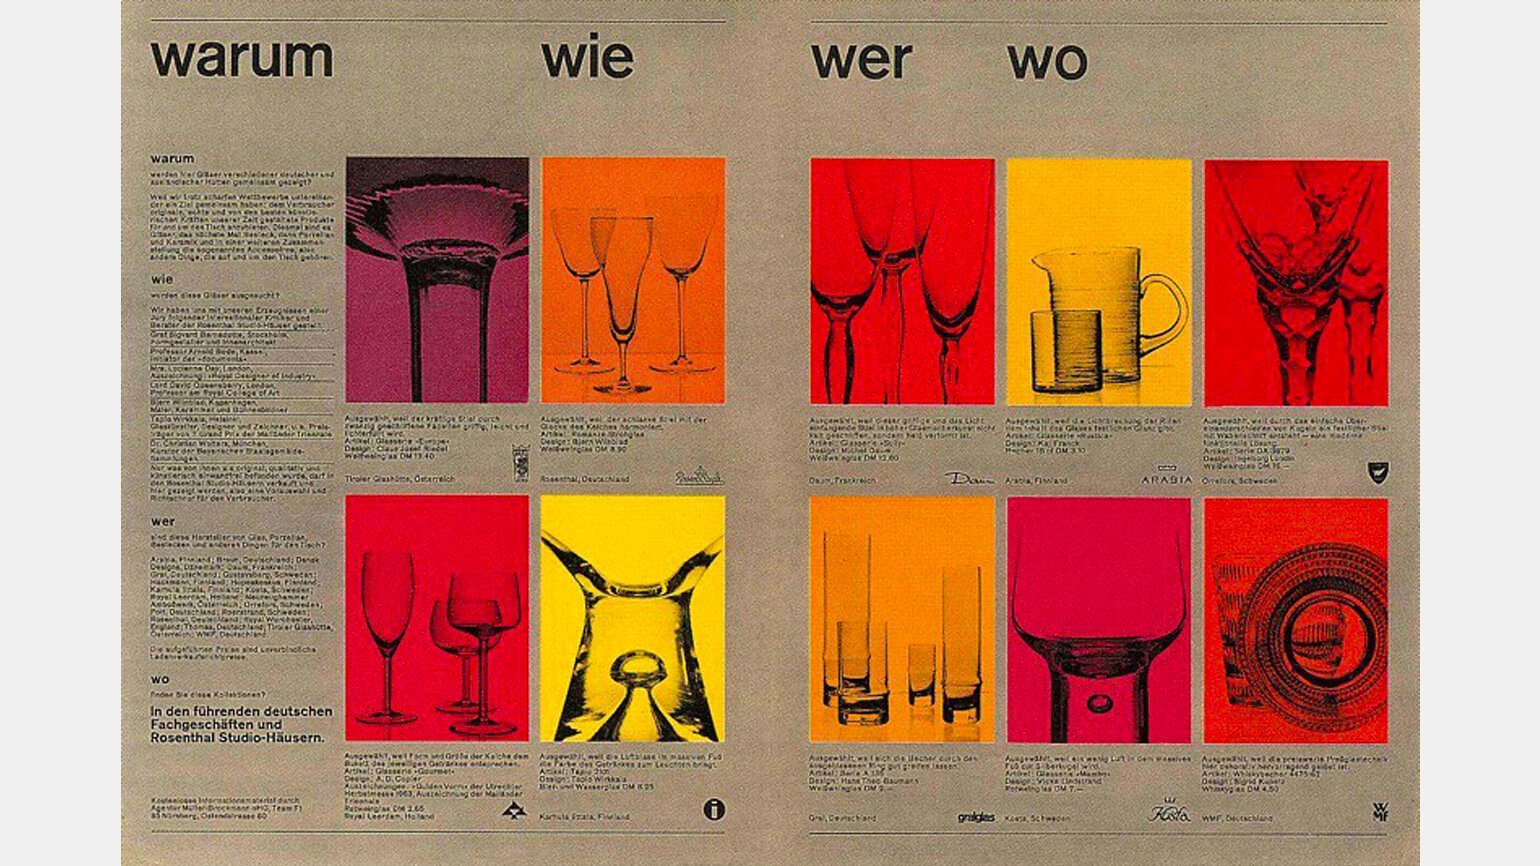 Брошюра на крафтовой бумаге с мелким текстом и изображением стеклянной посуды в красных, оранжевых, желтых и розовых прямоугольниках — пример швейцарского интернационального стиля в дизайне